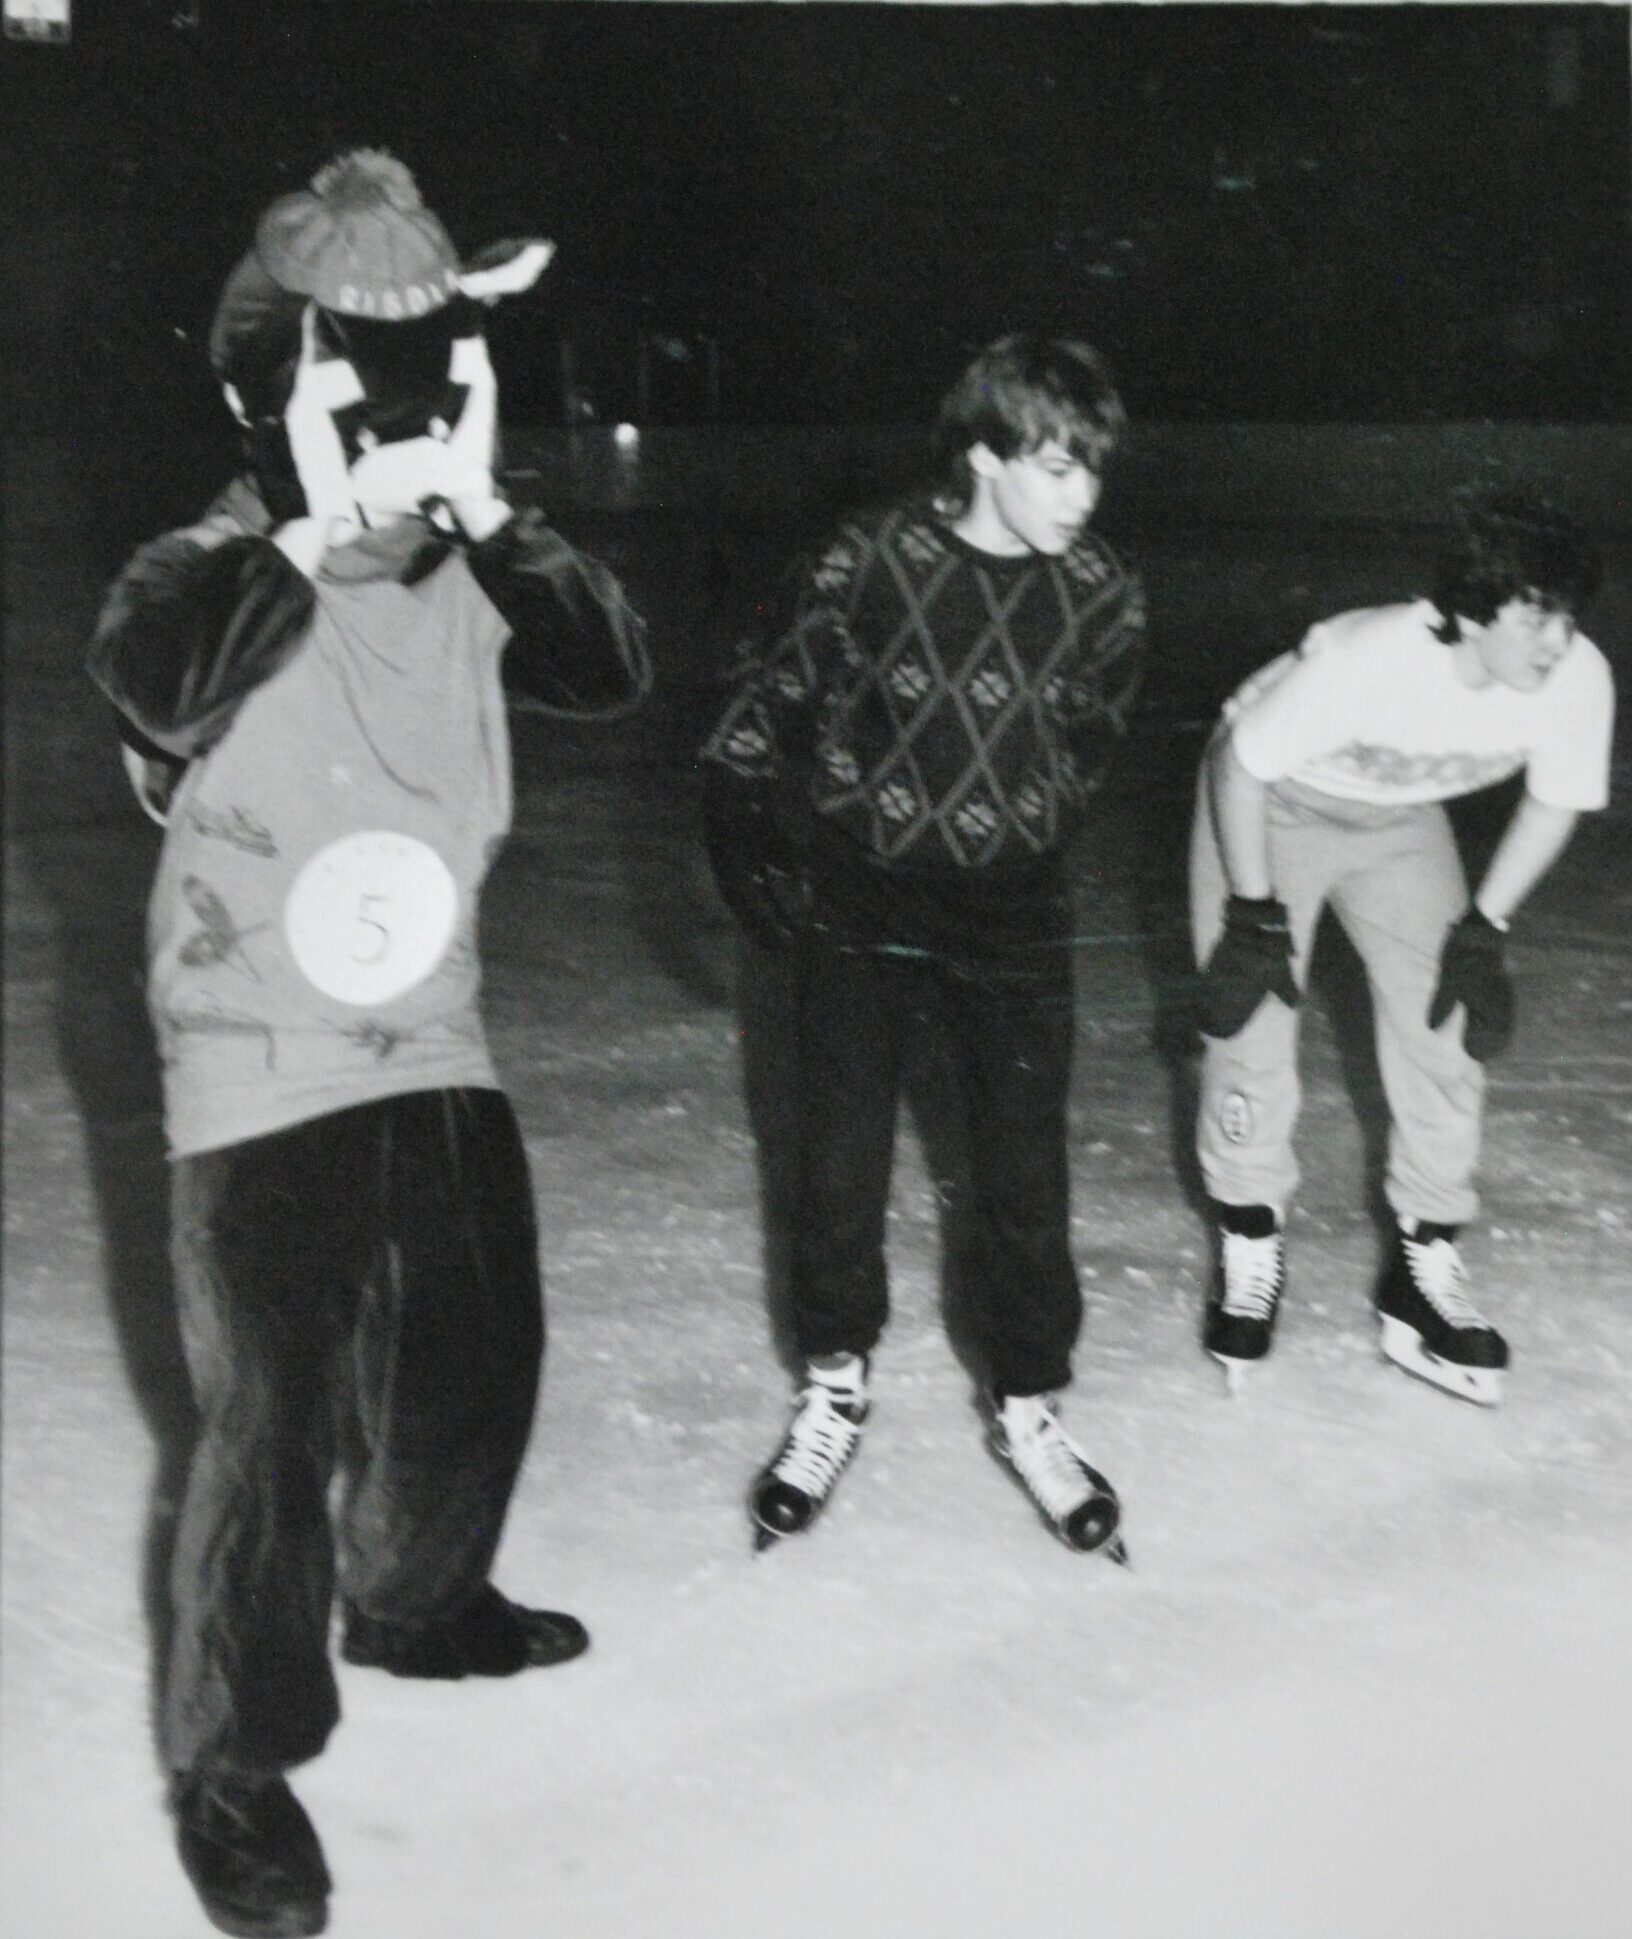 Trois garçons adolescents sur une patinoire le soir. Celui de gauche porte un costume de mascotte.